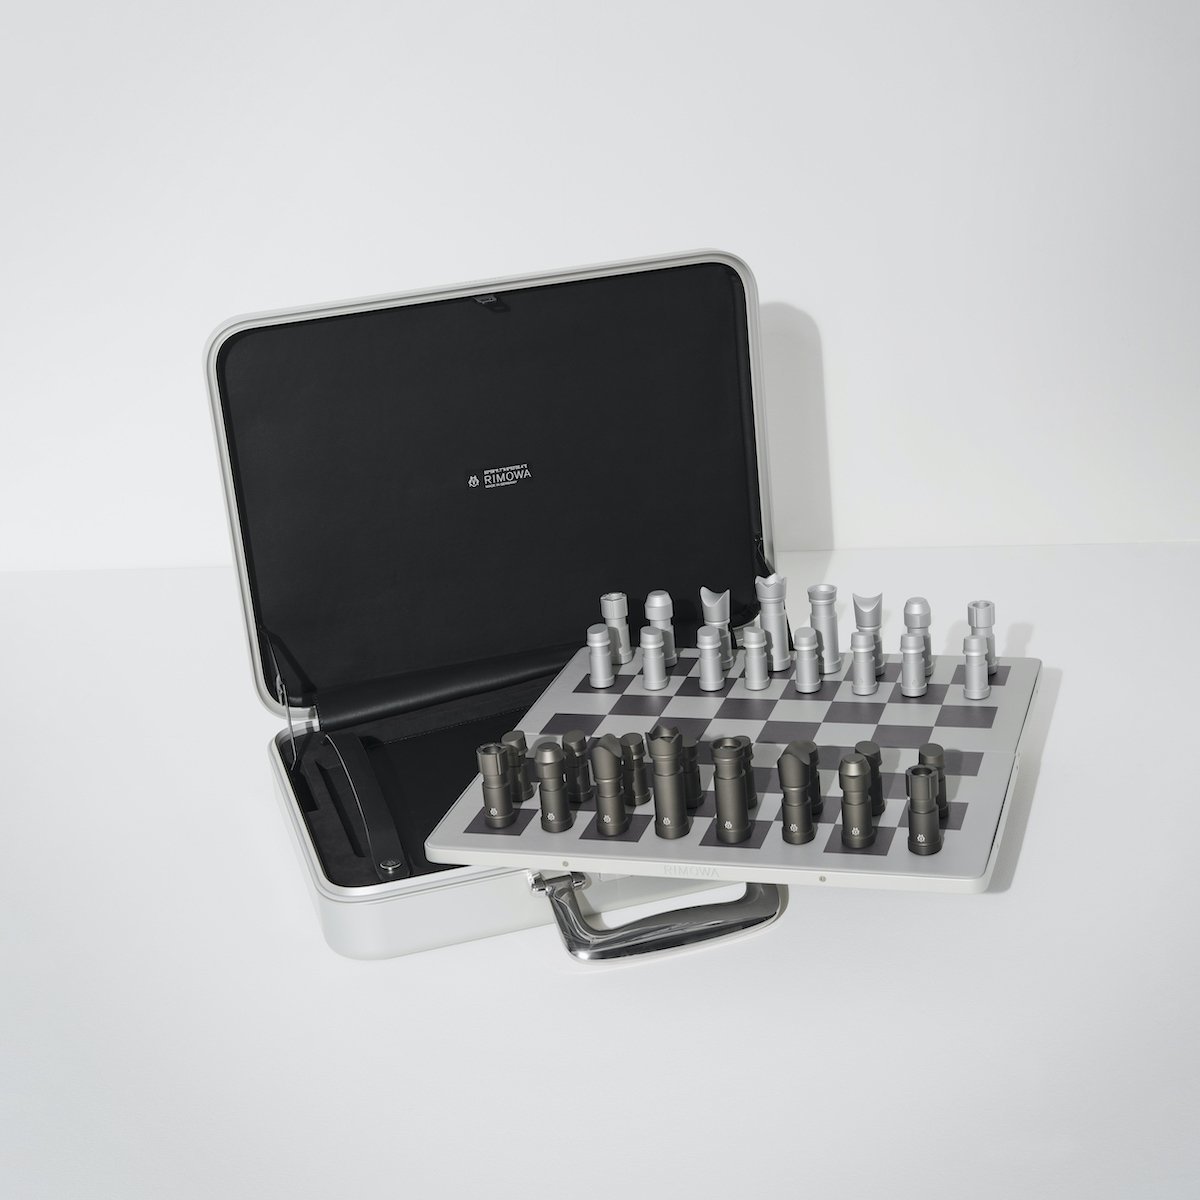 [国际象棋是绅士的爱好] RIMOWA 推出可存放国际象棋套装的随员 (FORZA STYLE) - 雅虎新闻